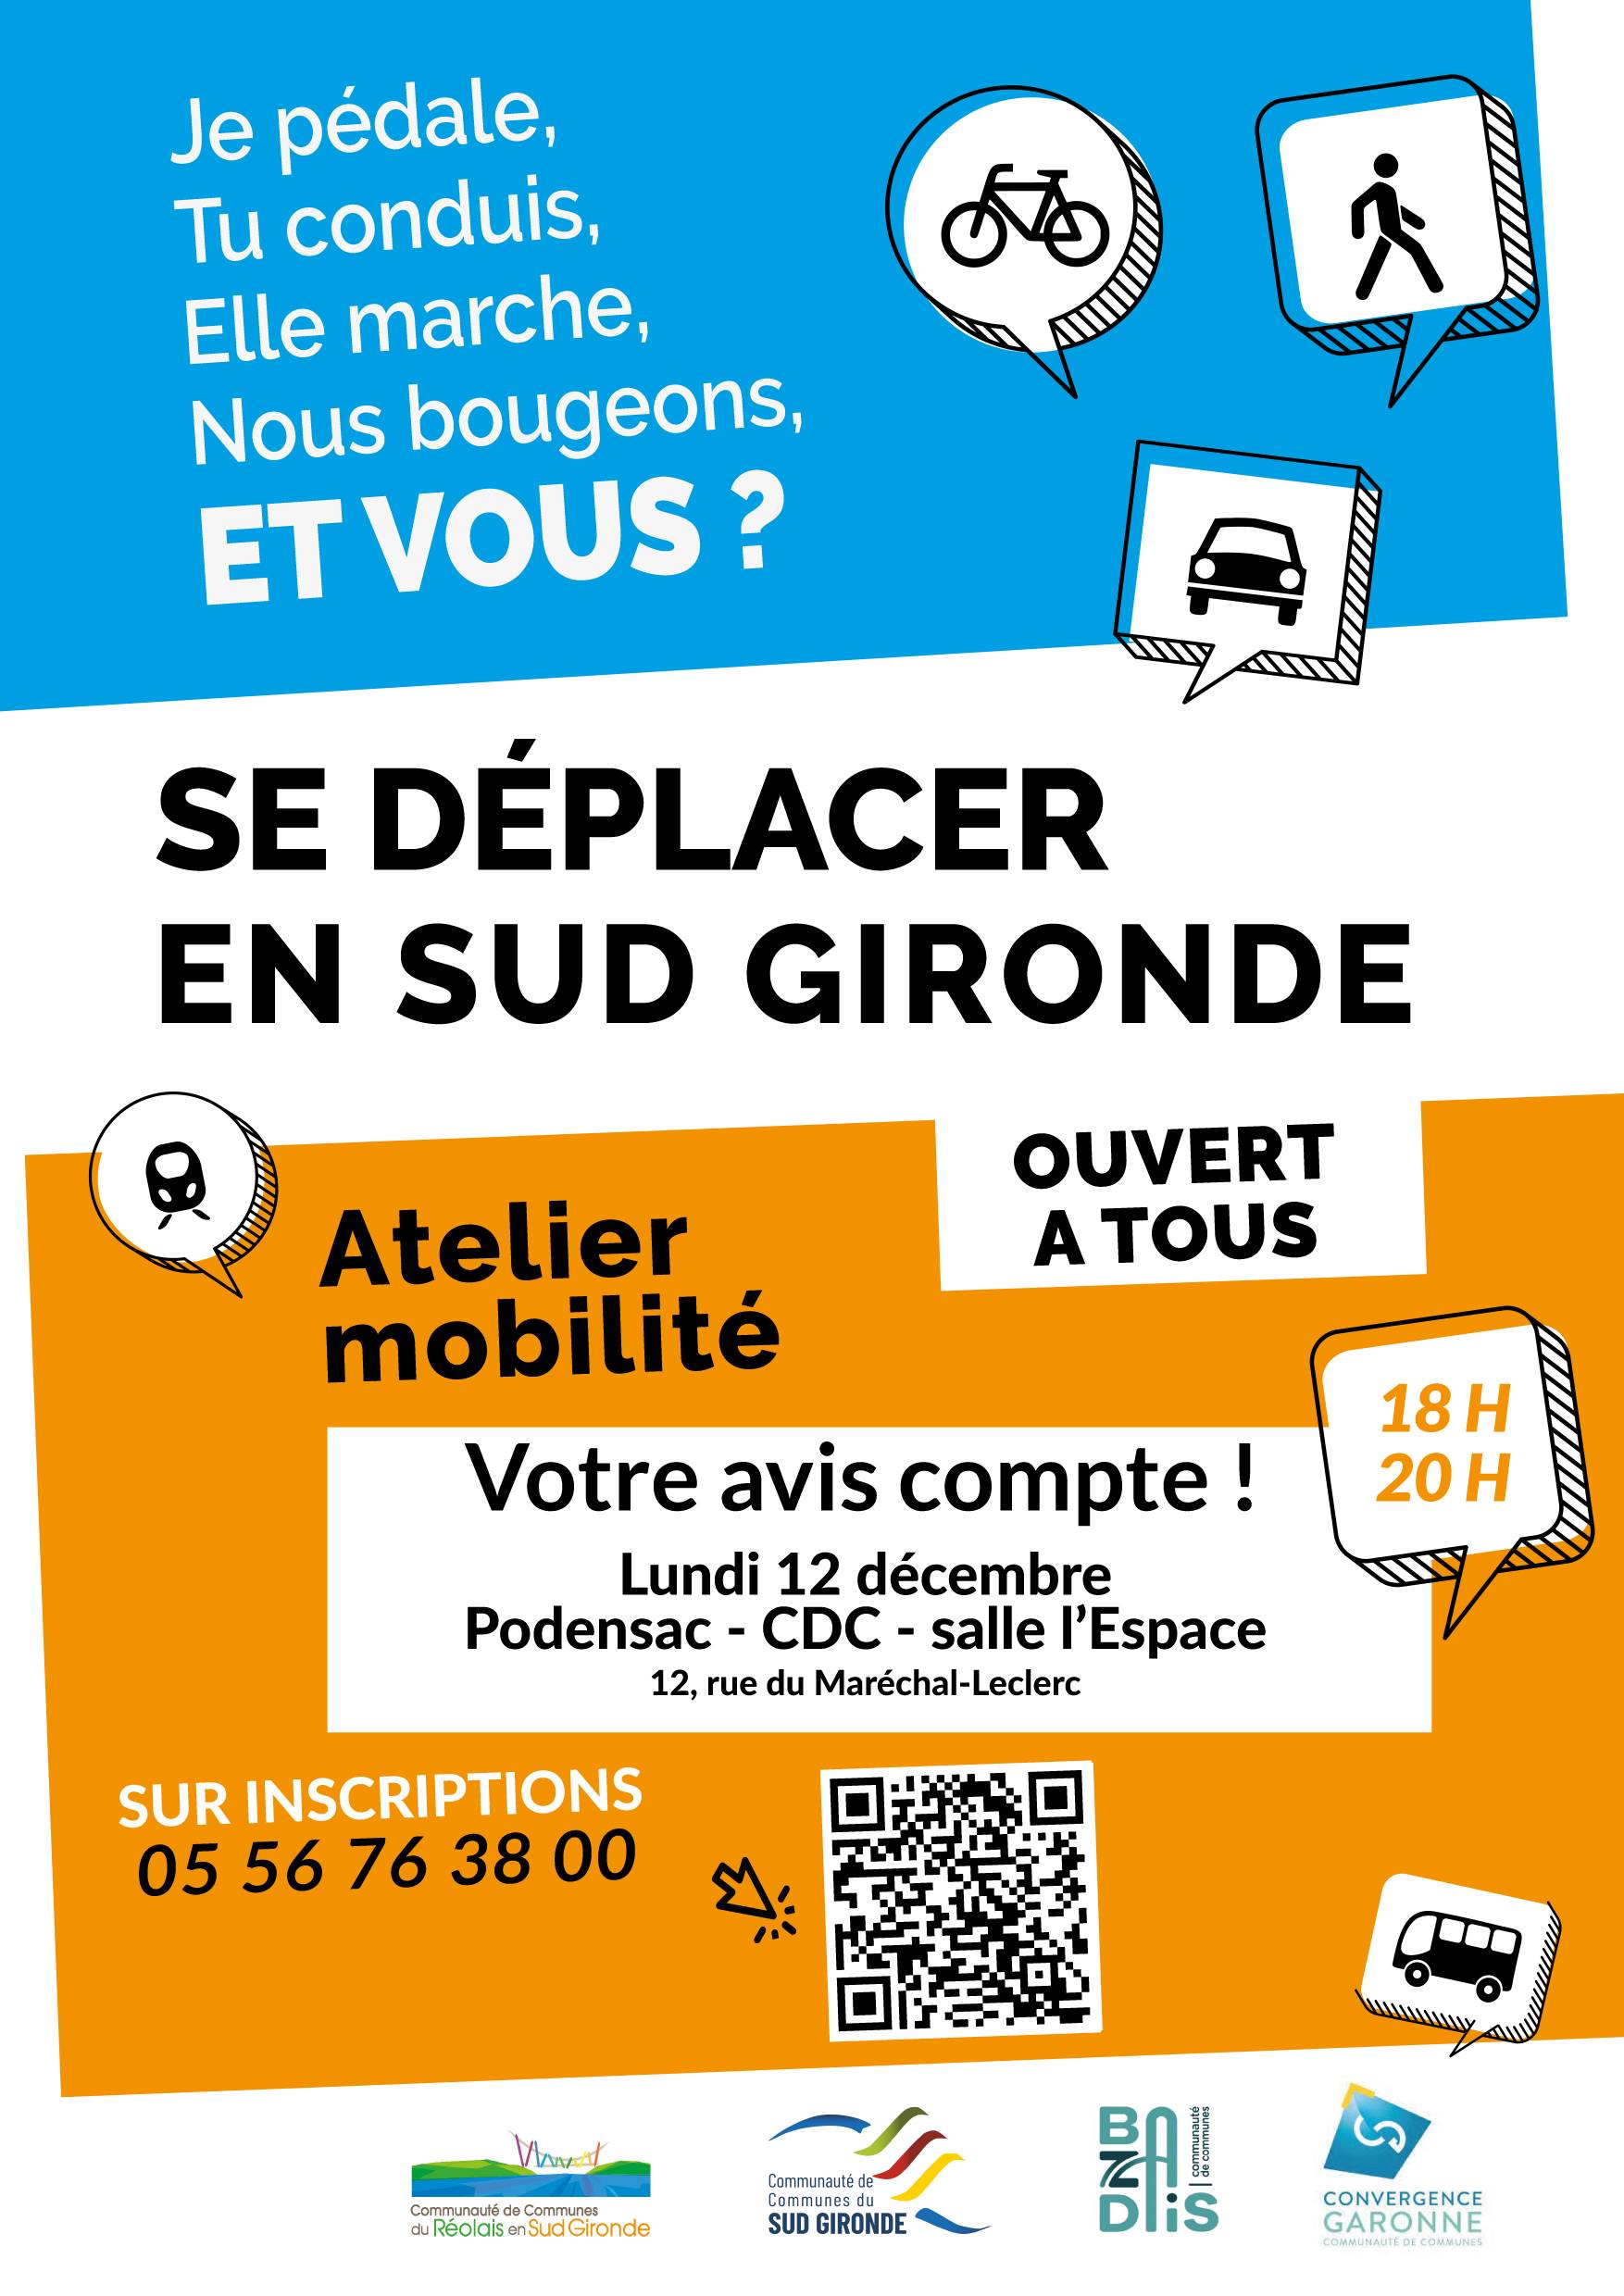 Affiche Atelier Mobilité en Sud Gironde - CDC Convergence Garonne